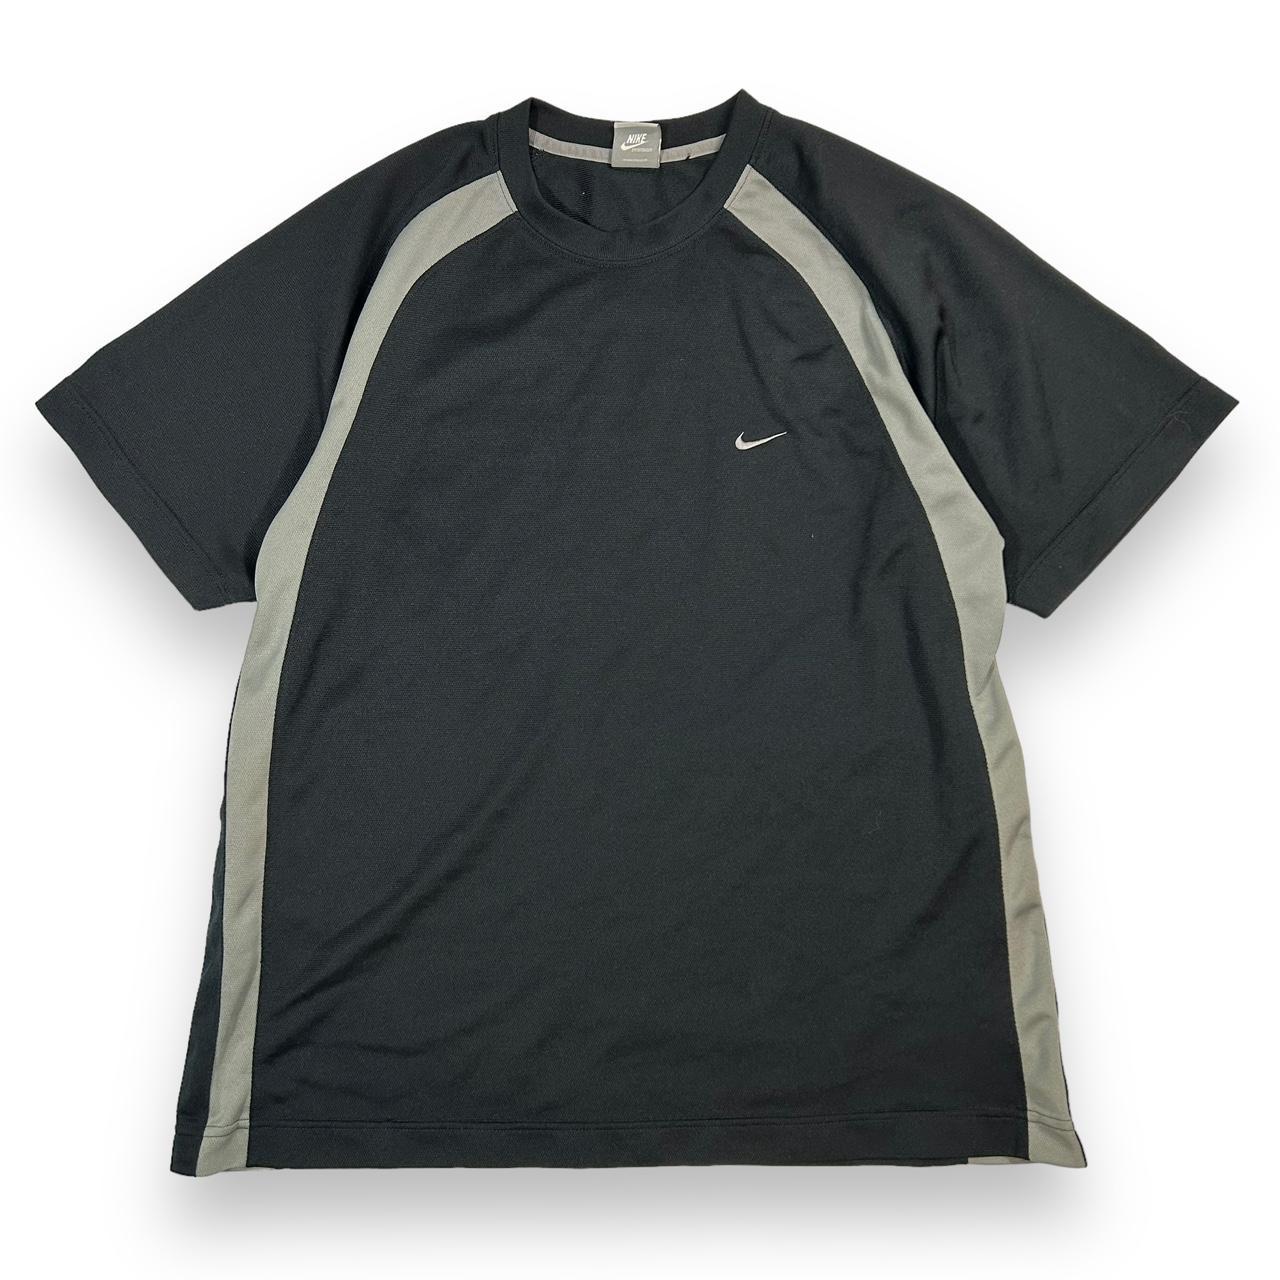 Vintage Y2K Nike Tee Shirt From early 2000s. Black... - Depop